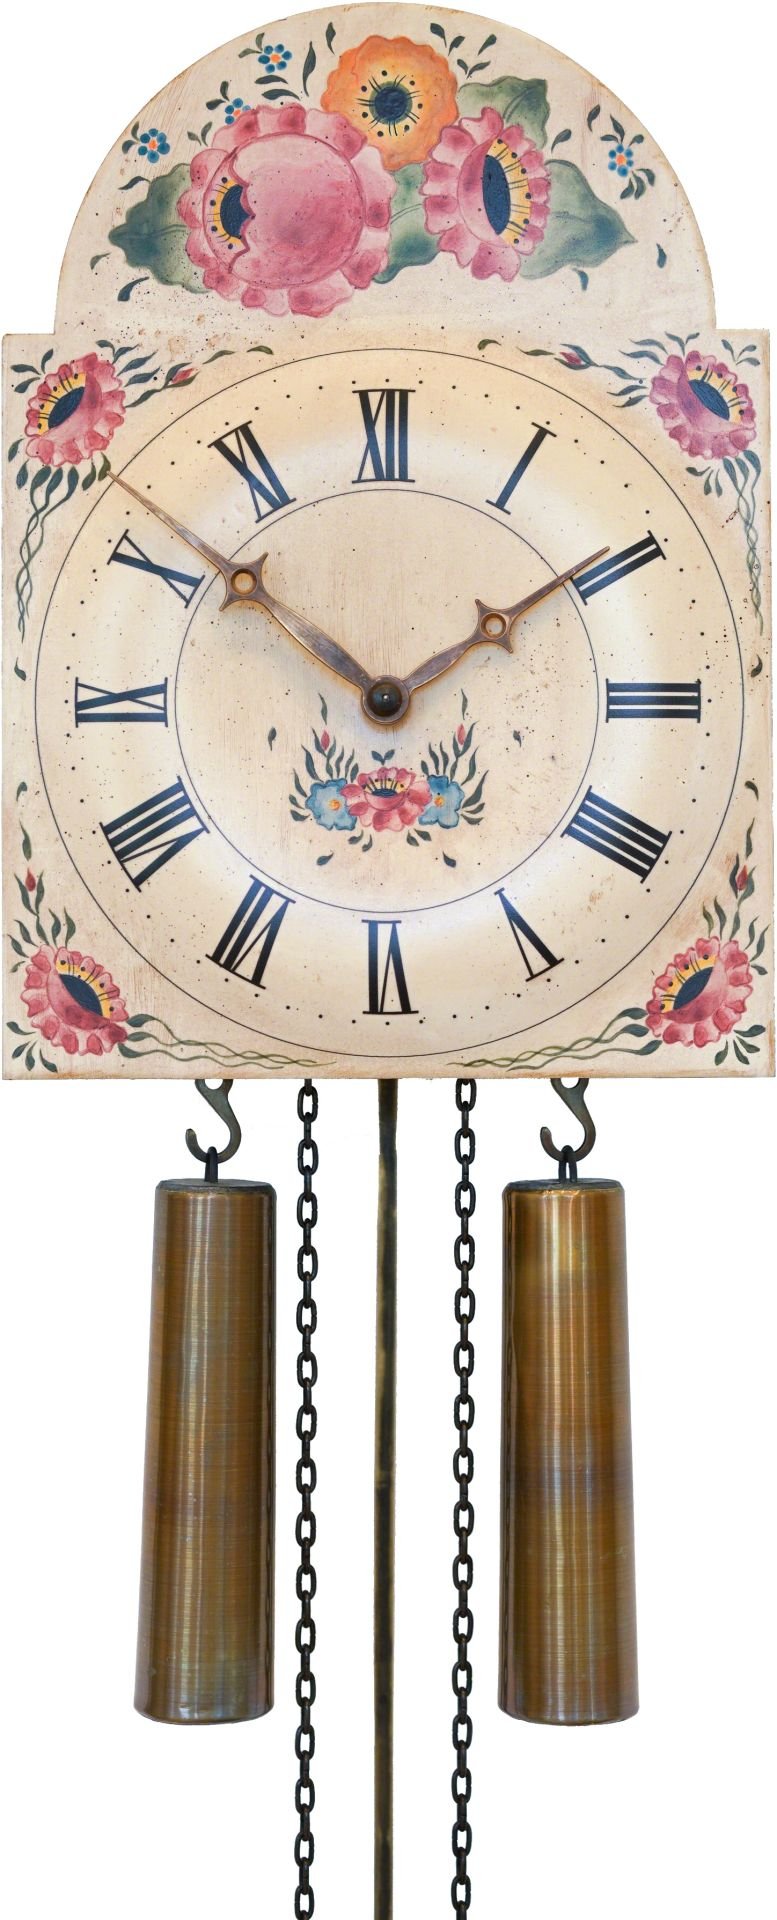 Reloj de cuco con fachada pintada movimiento mecánico de 8 días 26cm de Rombach & Haas